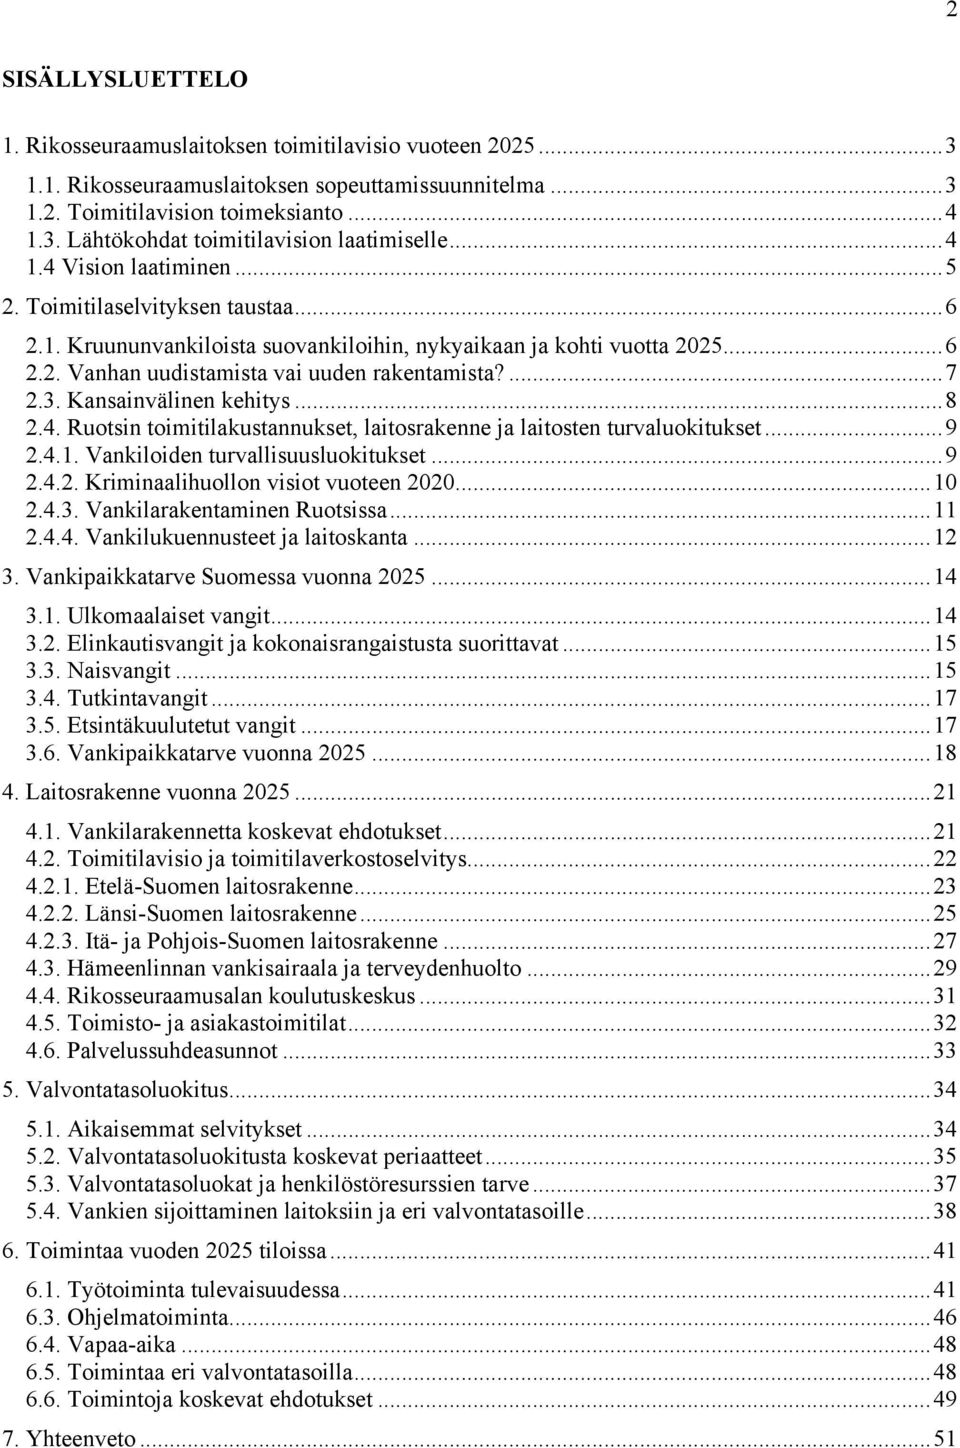 Kansainvälinen kehitys...8 2.4. Ruotsin toimitilakustannukset, laitosrakenne ja laitosten turvaluokitukset...9 2.4.1. Vankiloiden turvallisuusluokitukset...9 2.4.2. Kriminaalihuollon visiot vuoteen 2020.